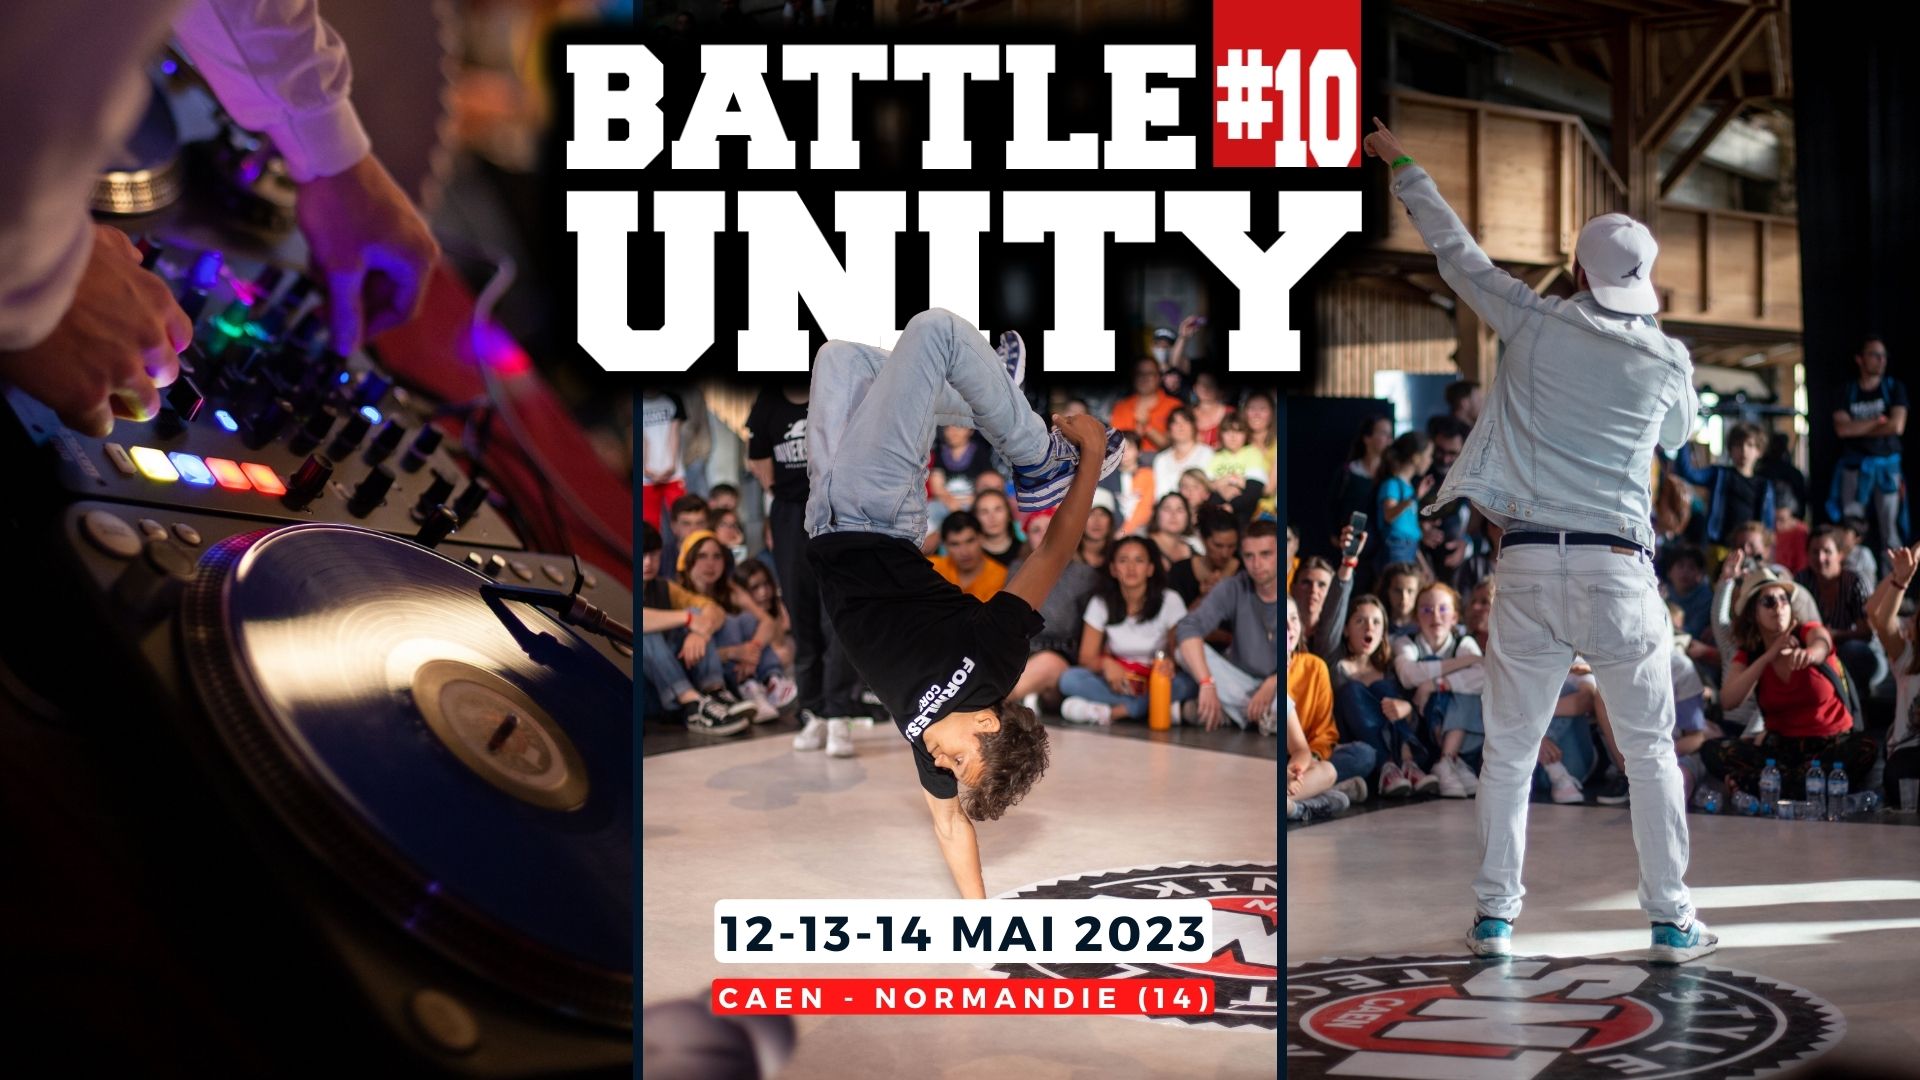 Battle Breakdance Battle Unity Caen International